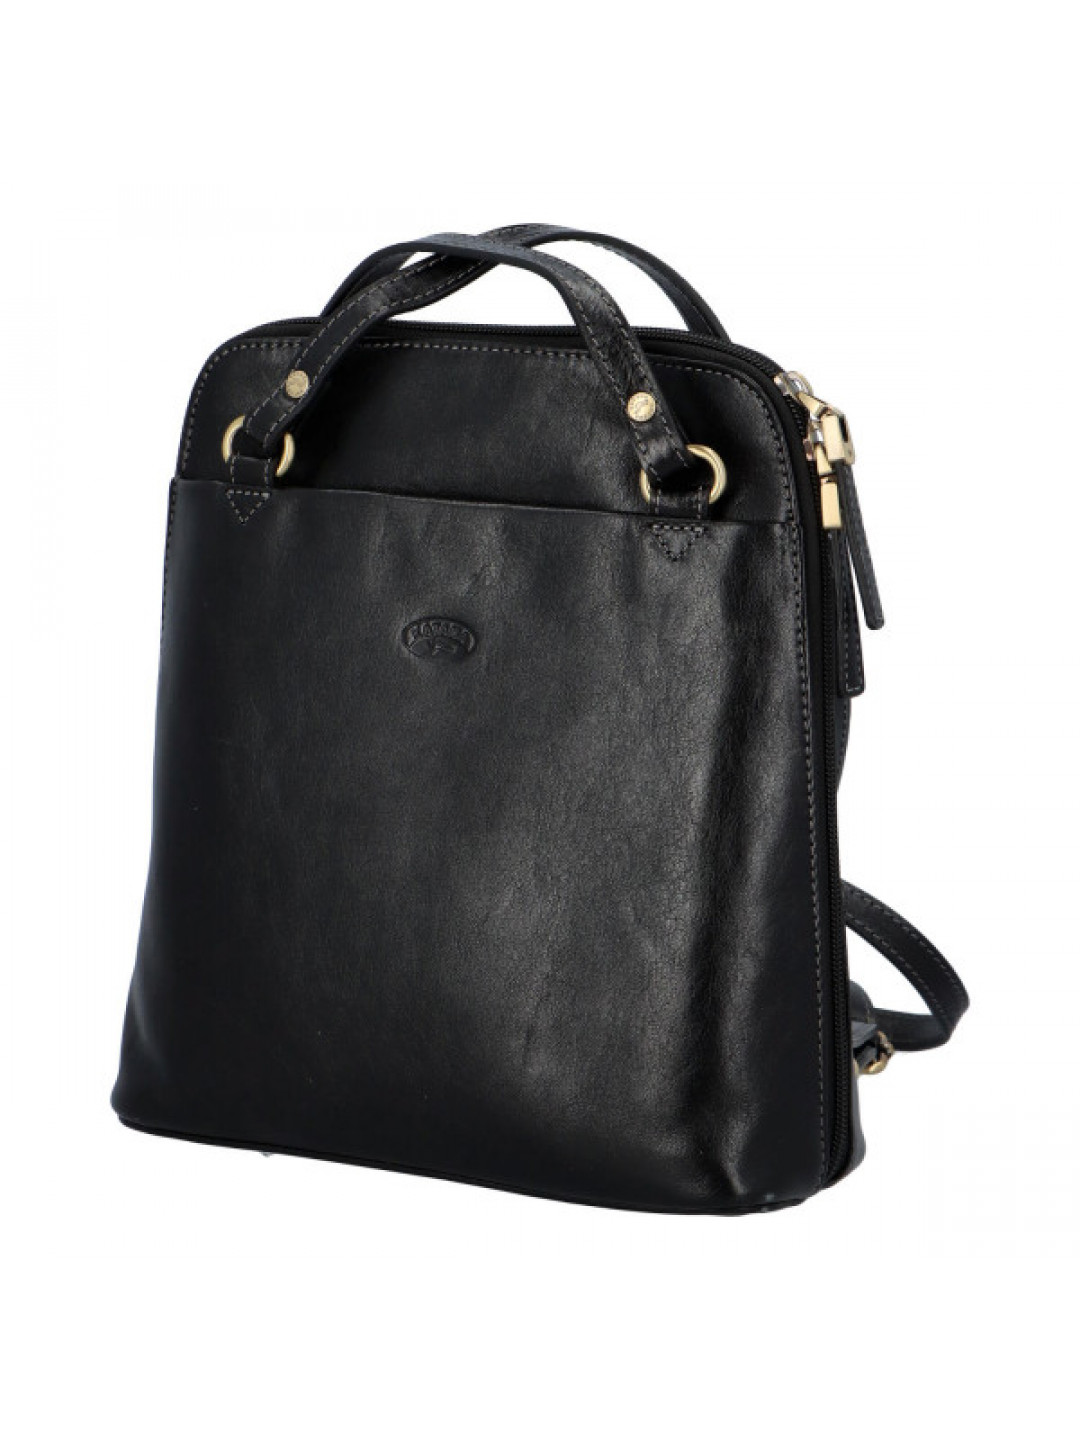 Luxusní kožený kabelko batoh 2 v 1 Katana deluxe černý